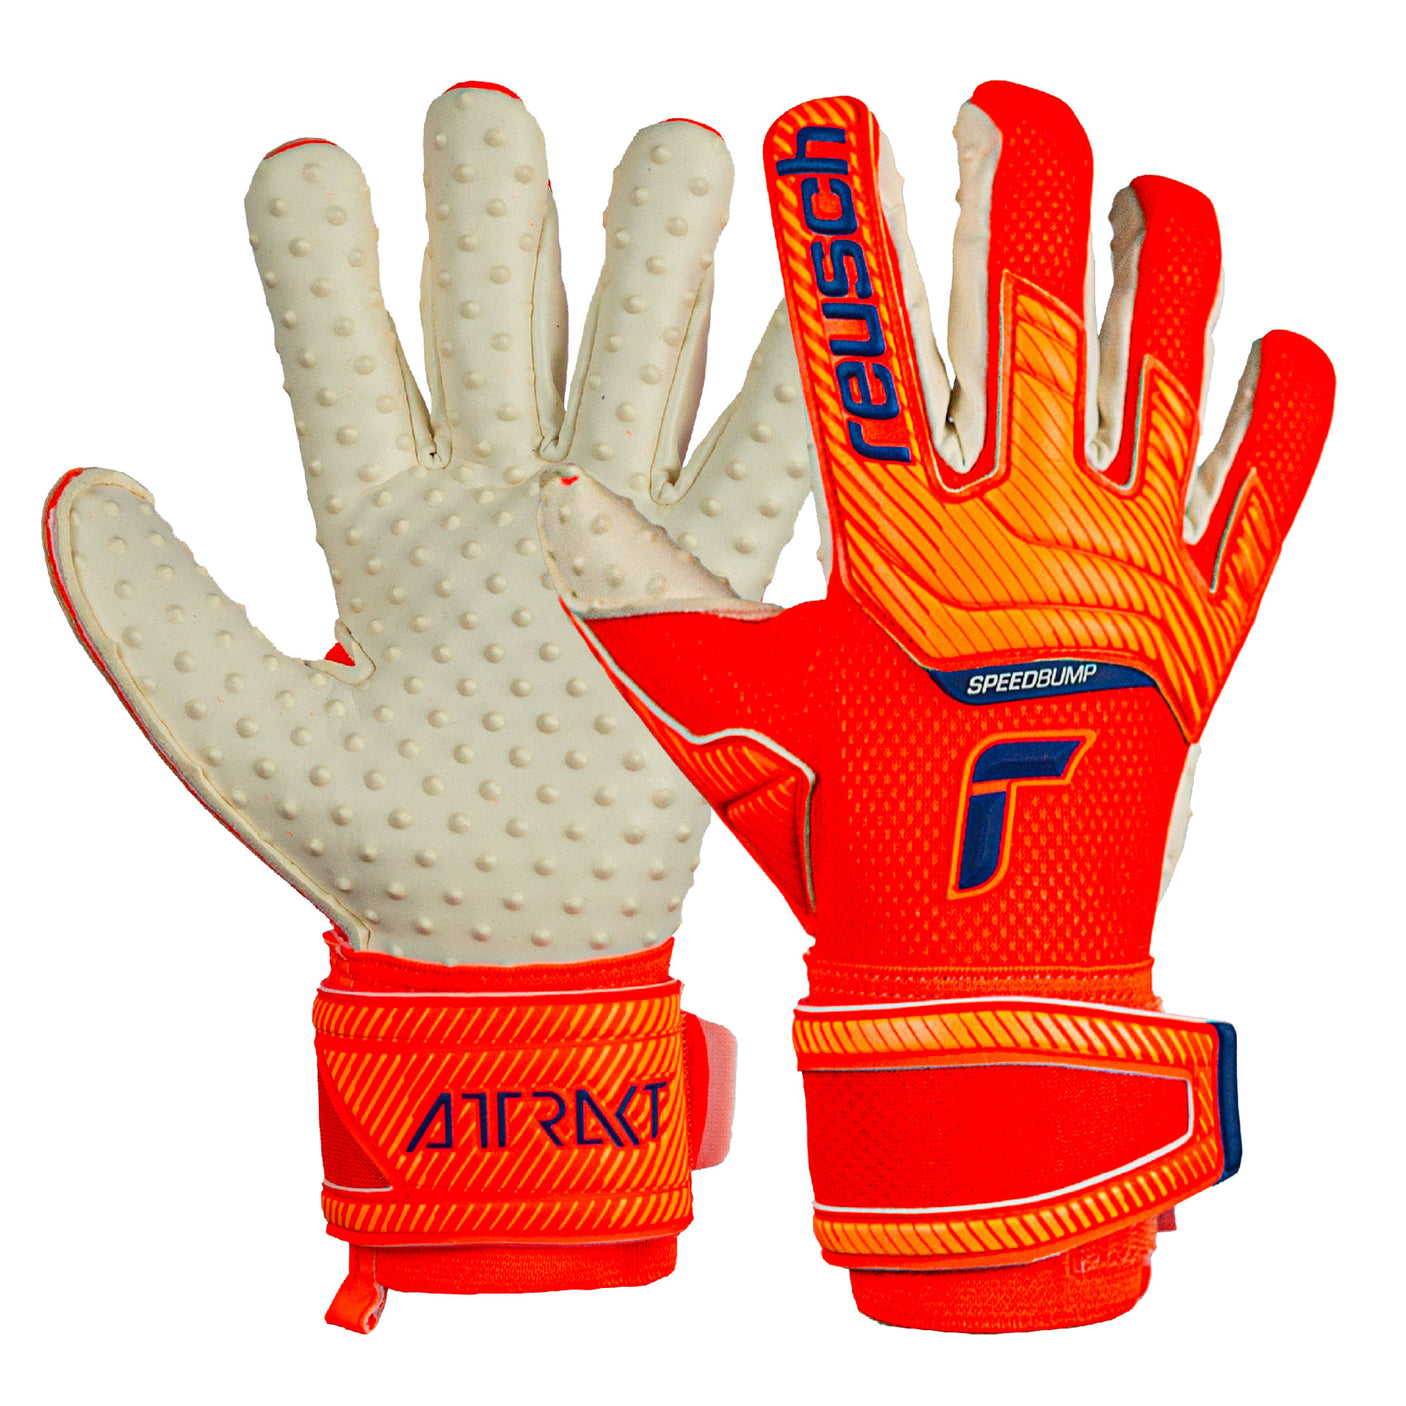 Reusch Men's Goalkeeper Attrakt SpeedBump Gloves Shocking Orange/Blue